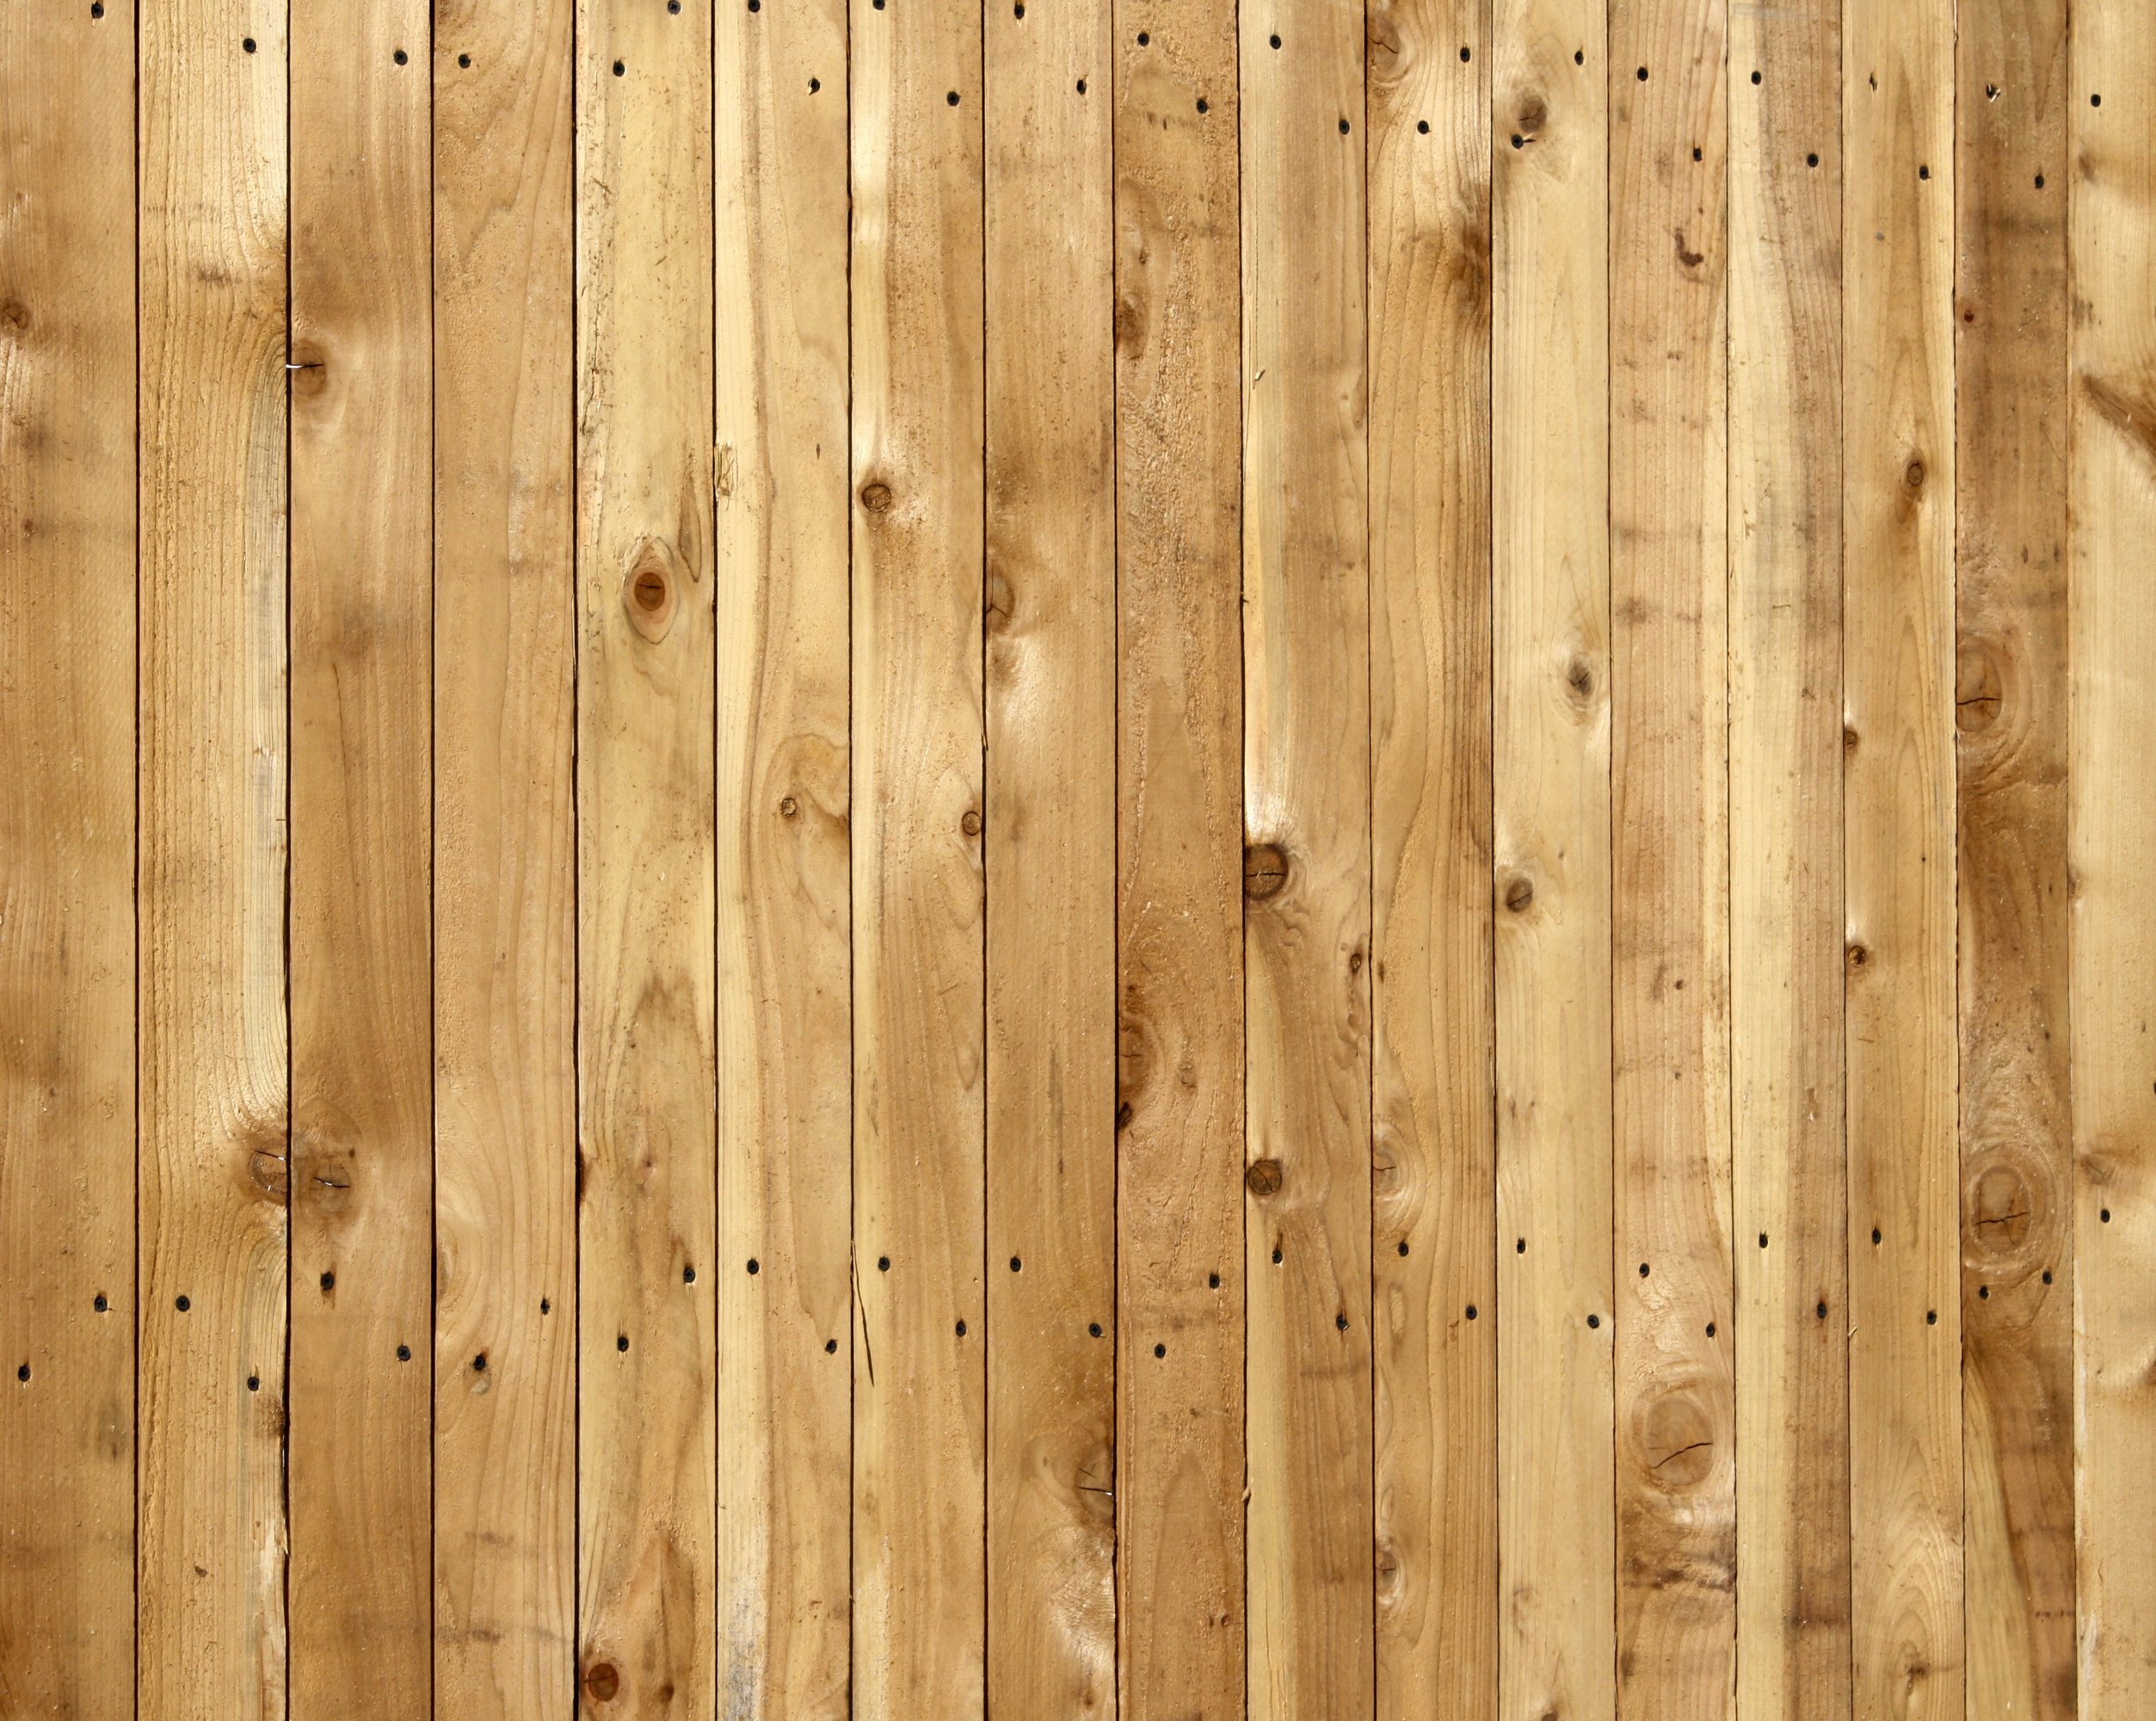 Wooden Fence Texture Closeup Picture Photograph Photos Public